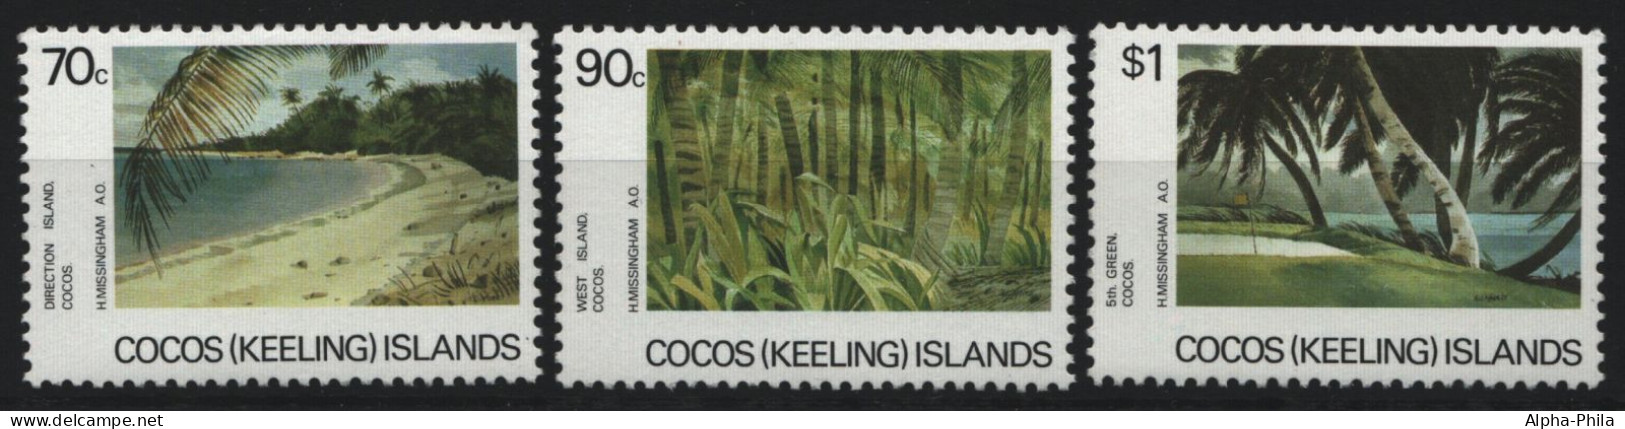 Kokos-Inseln 1987 - Mi-Nr. 170-172 ** - MNH - Landschaften - Natur - Cocos (Keeling) Islands